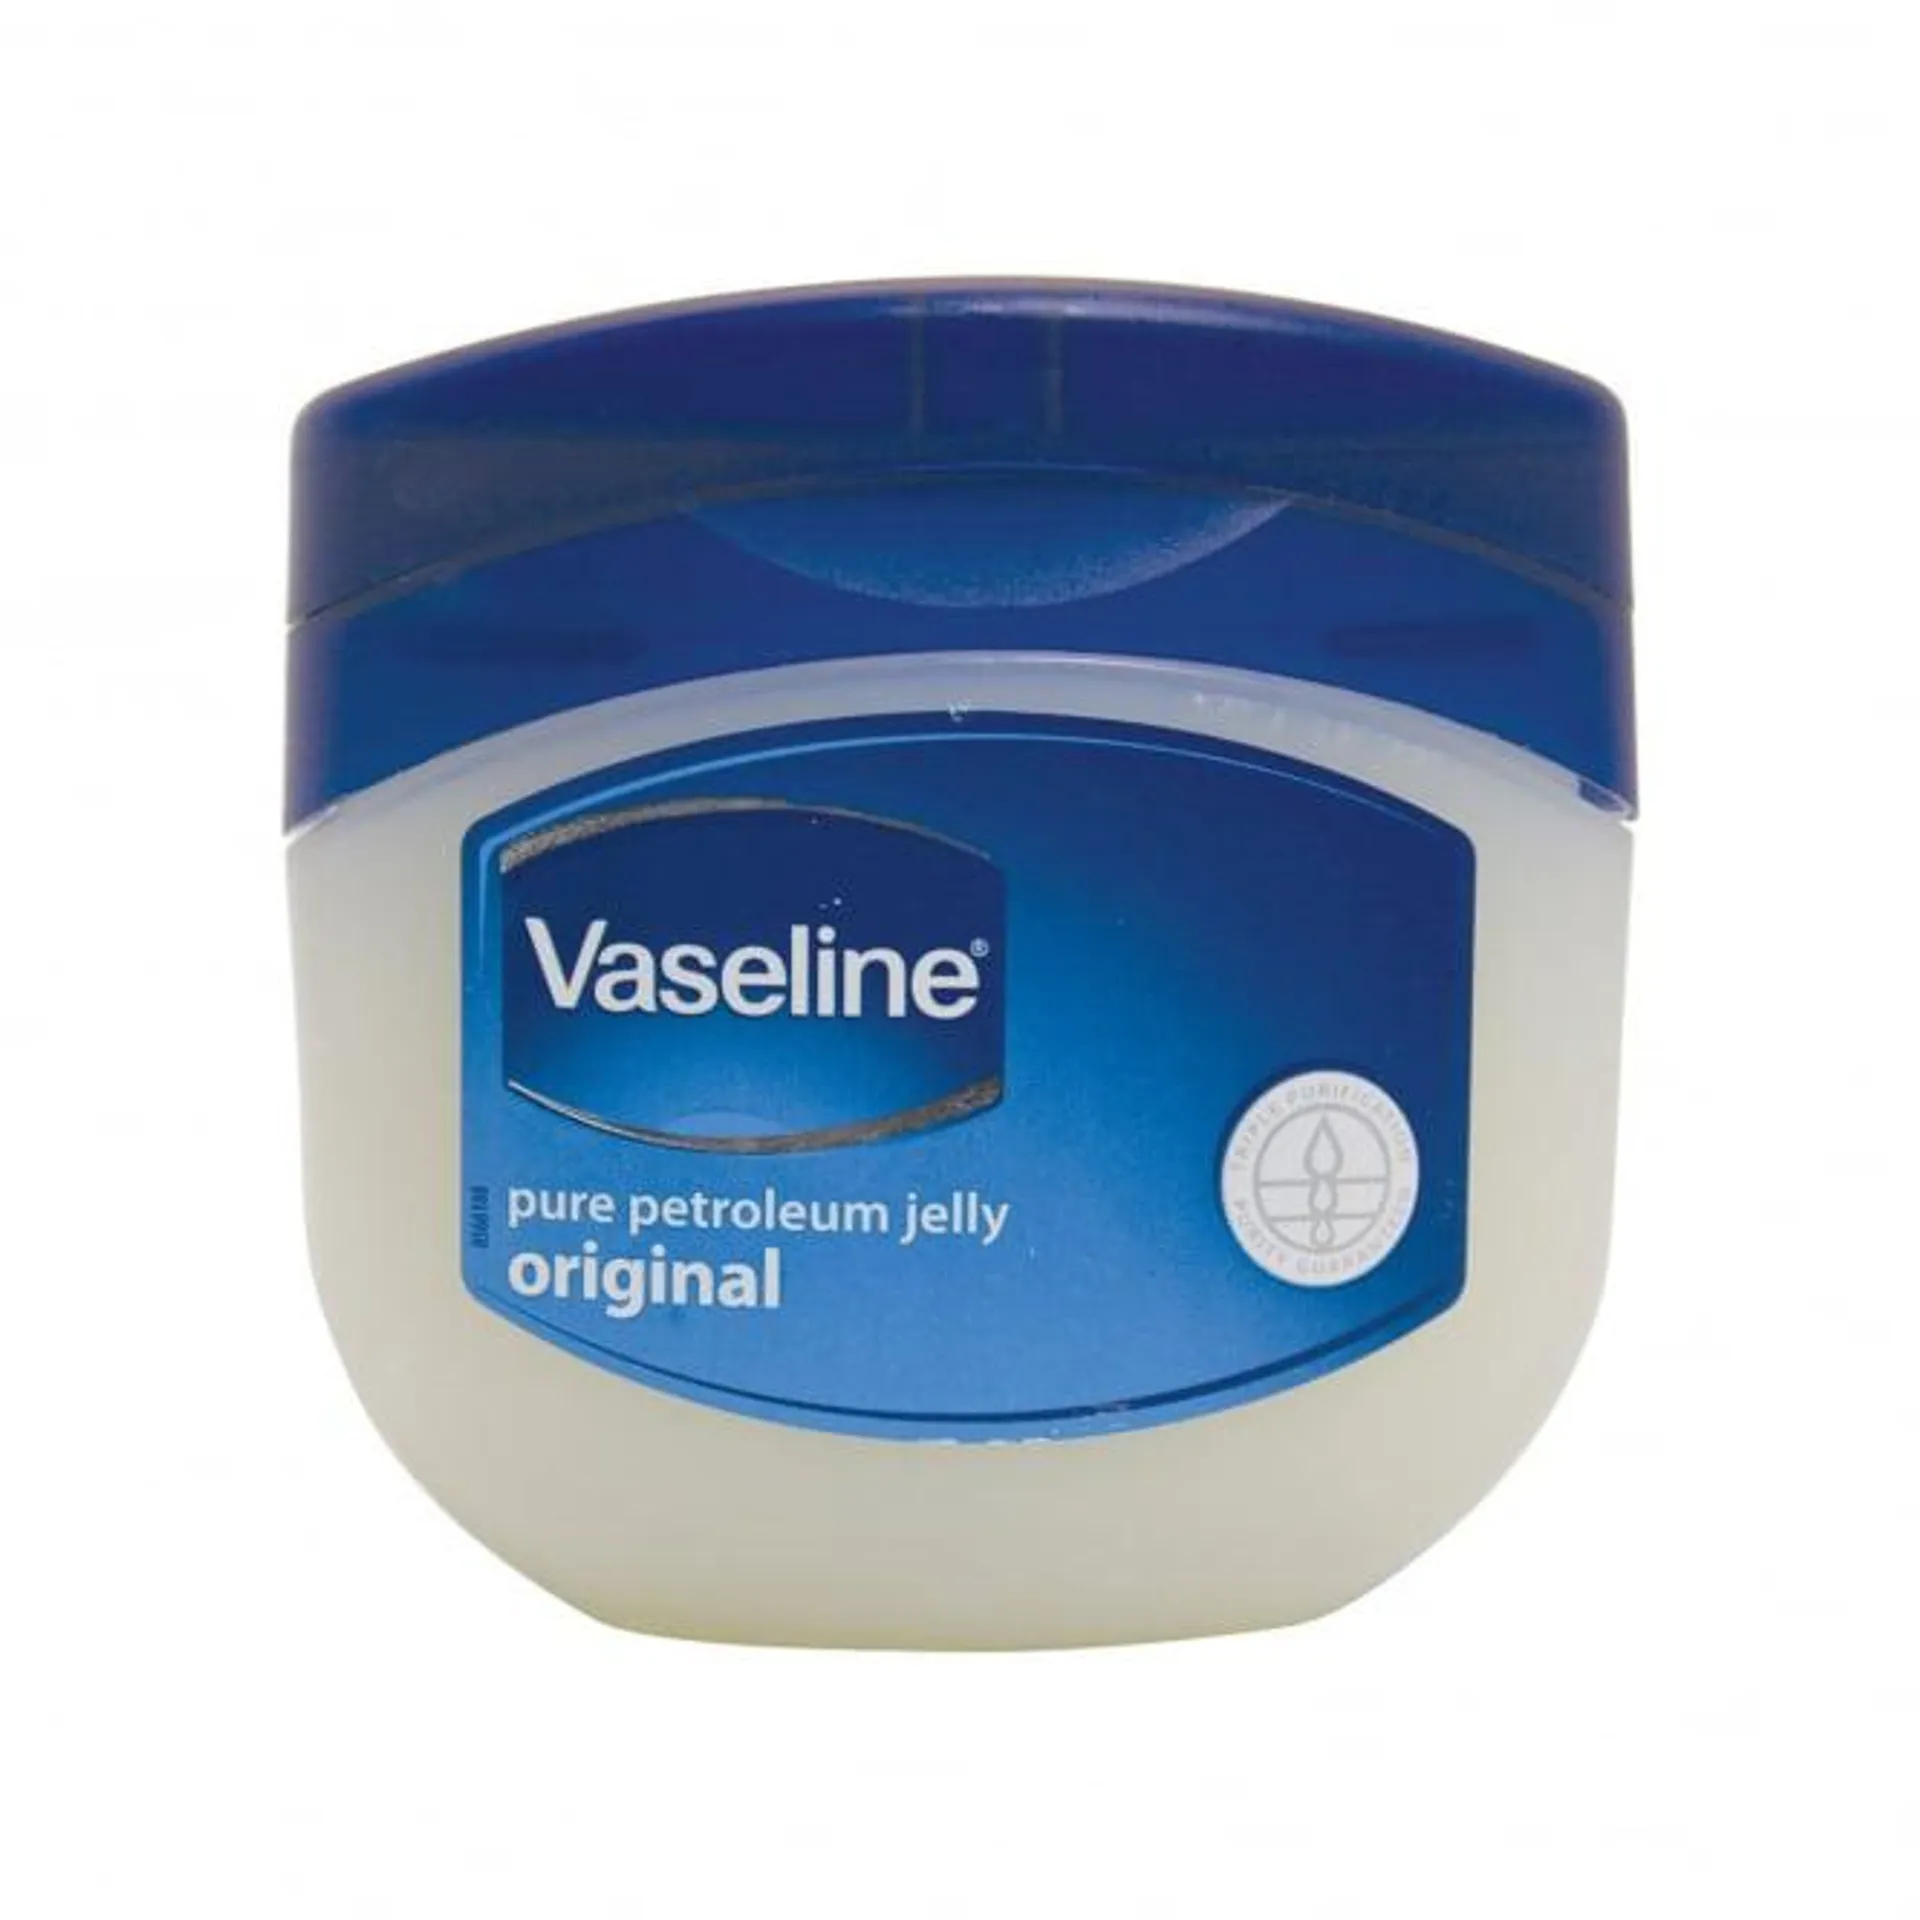 Vaseline Petroleum Jelly 250ml Jar